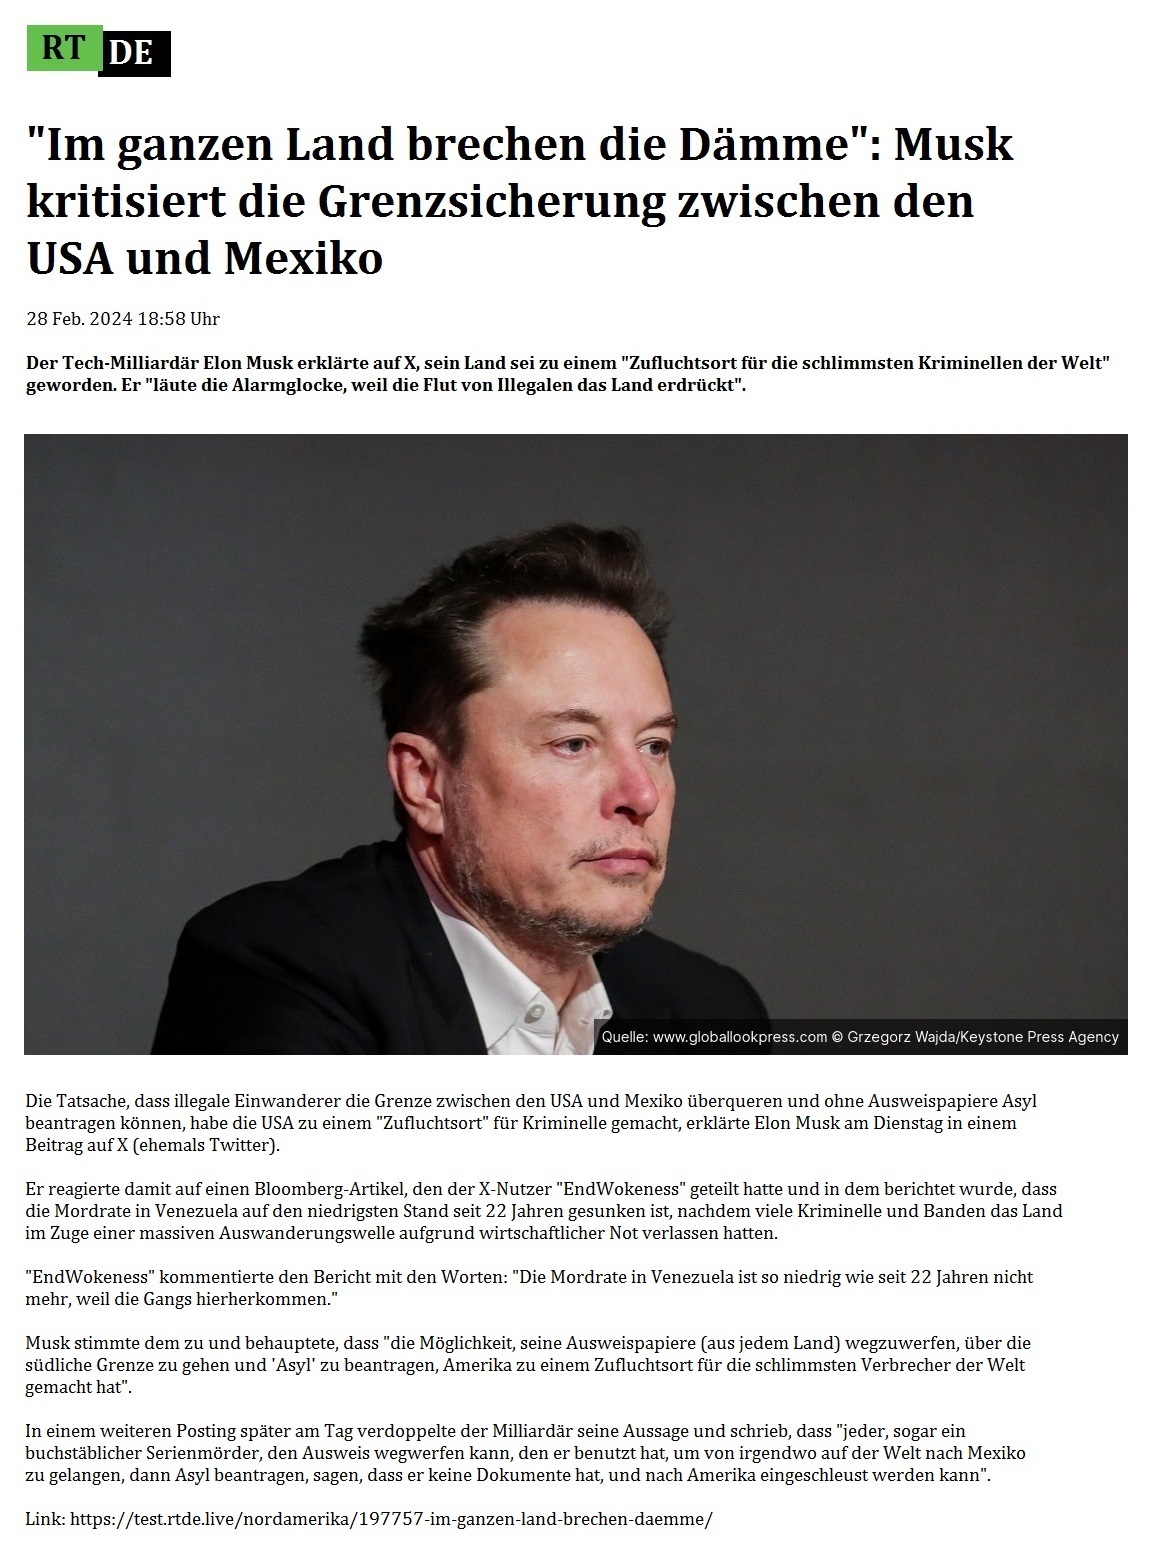 'Im ganzen Land brechen die Dmme': Musk kritisiert die Grenzsicherung zwischen den USA und Mexiko - 28 Feb. 2024 18:58 Uhr - Der Tech-Milliardr Elon Musk erklrte auf X, sein Land sei zu einem 'Zufluchtsort fr die schlimmsten Kriminellen der Welt' geworden. Er 'lute die Alarmglocke, weil die Flut von Illegalen das Land erdrckt'. - 28 Feb. 2024 18:58 Uhr- RT DE - Link: https://test.rtde.live/nordamerika/197757-im-ganzen-land-brechen-daemme/